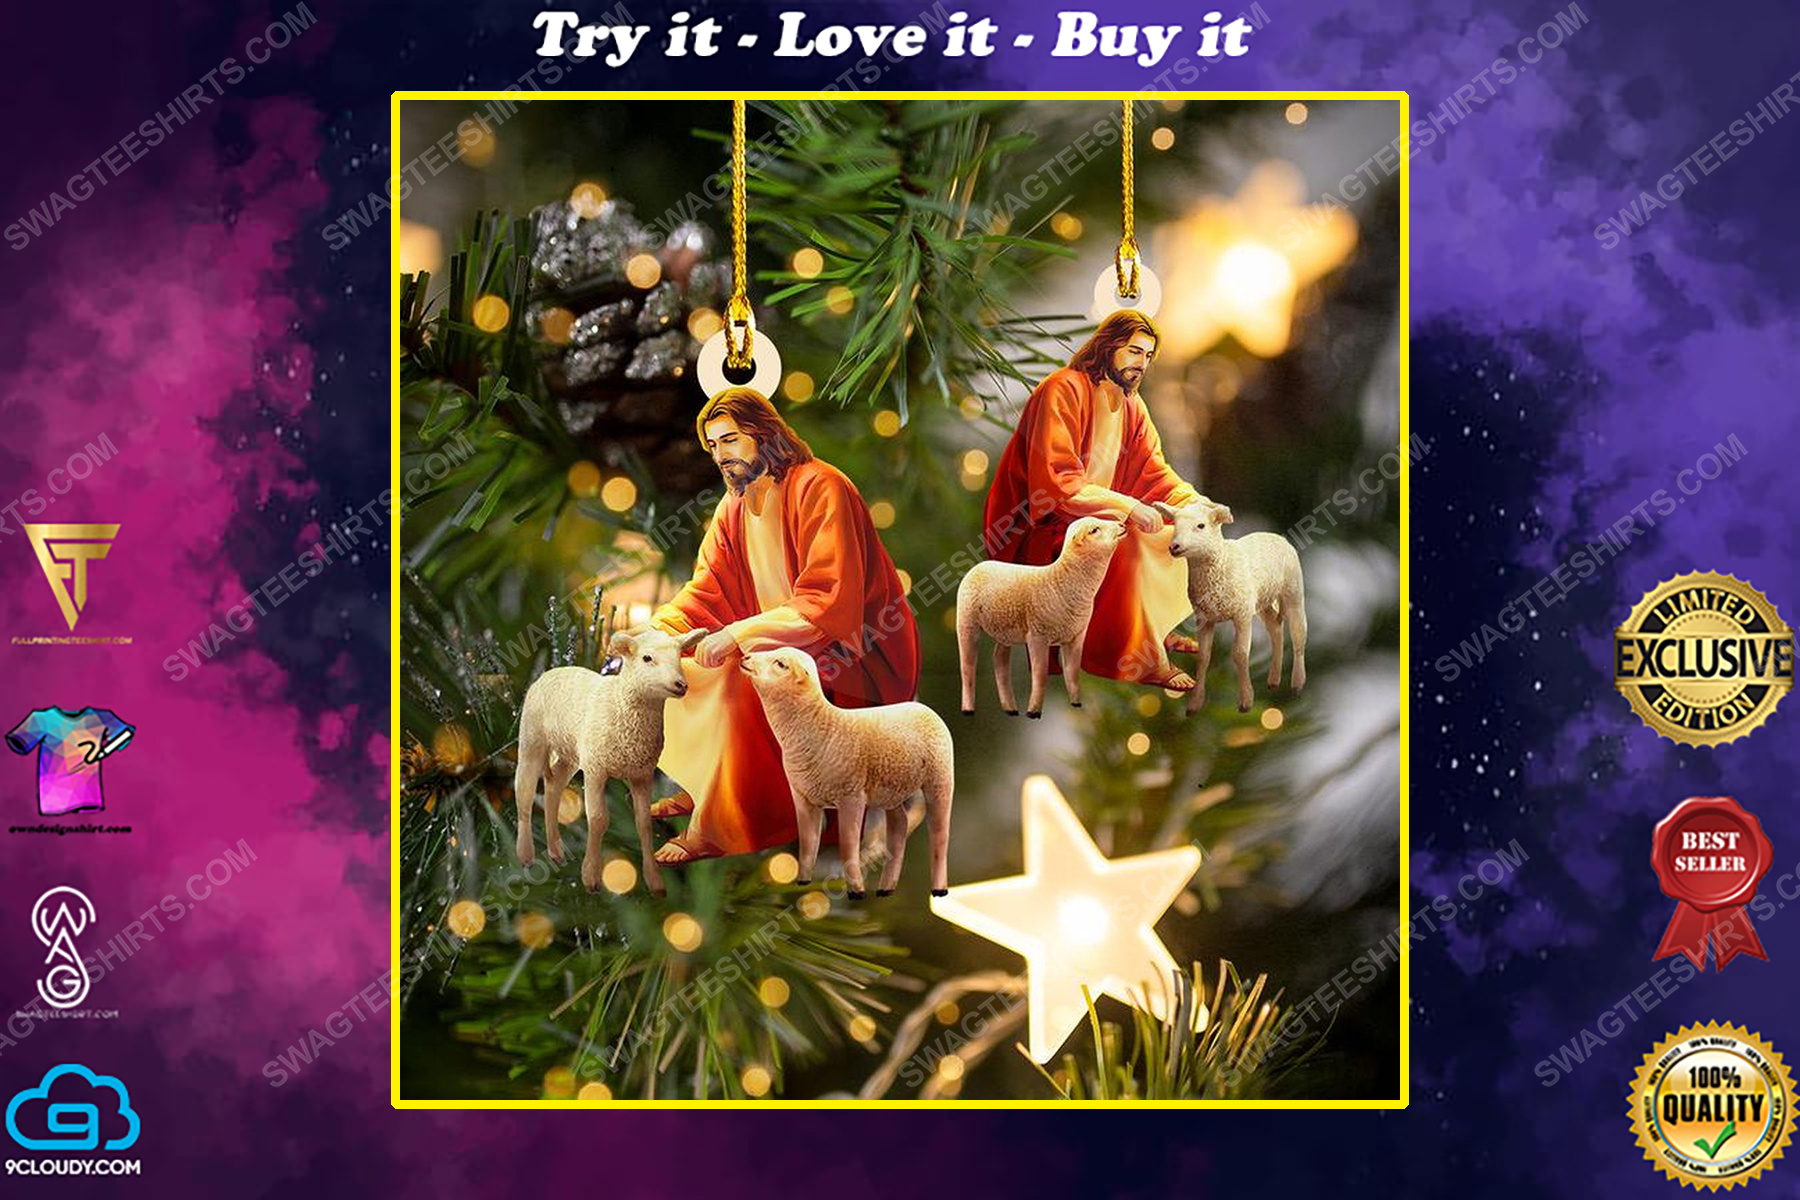 Jesus and sheep christmas gift ornament